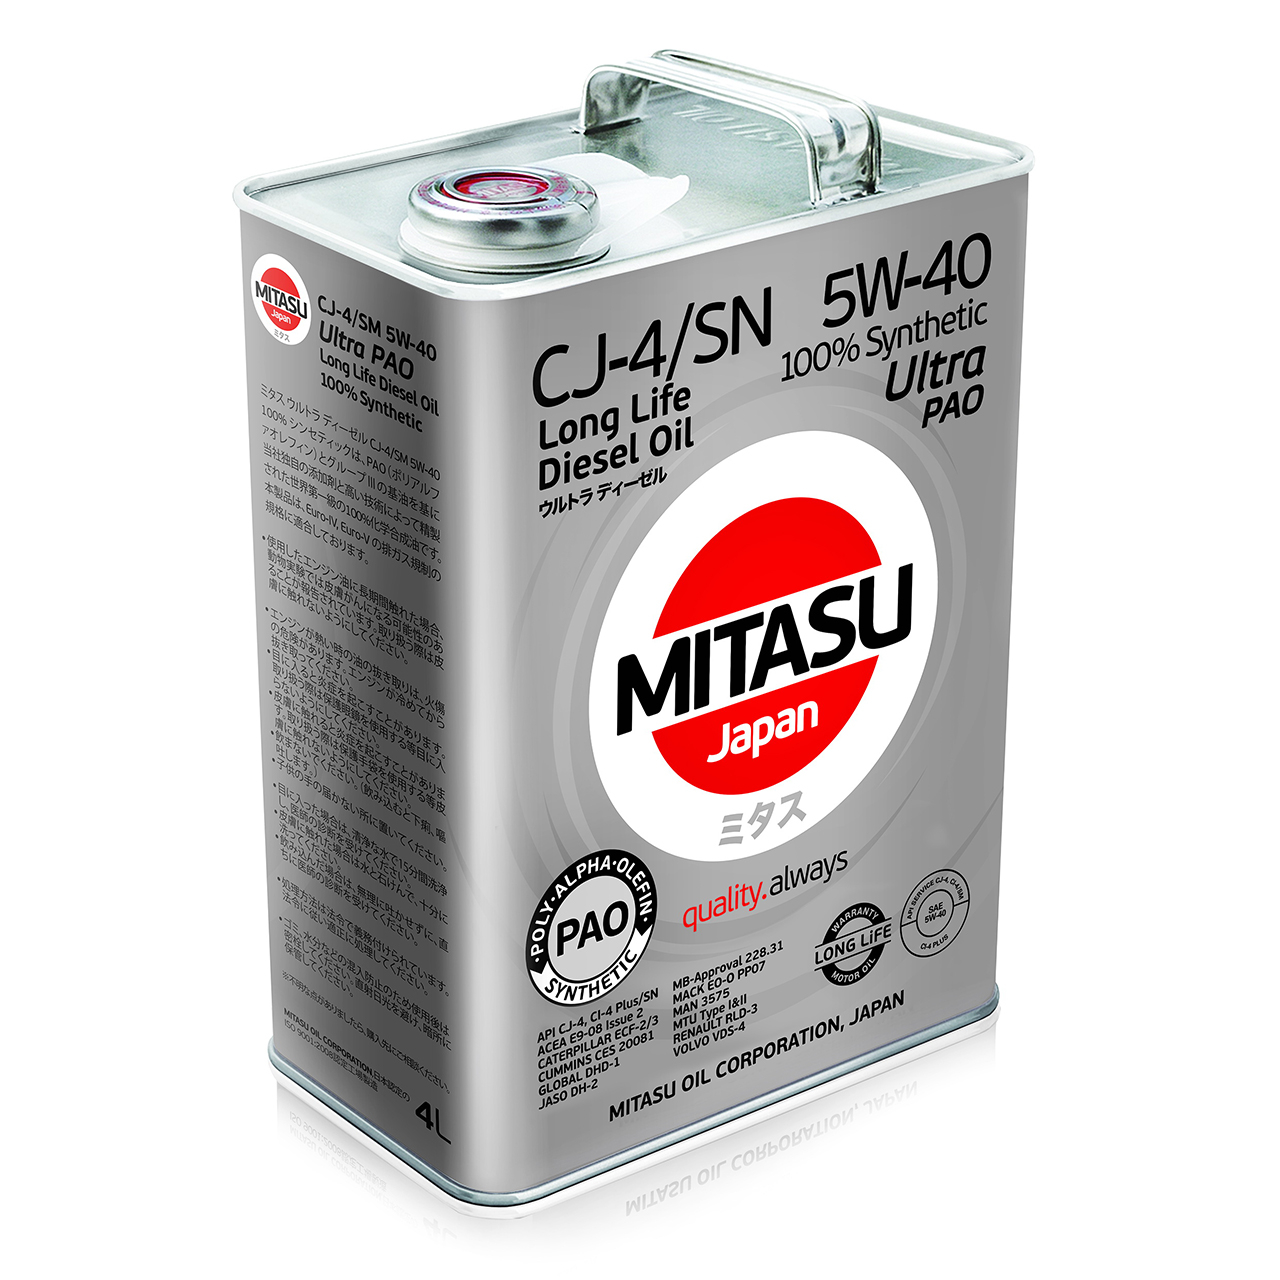 Купить запчасть MITASU - MJ2114 Масло моторное MITASU CJ-4/SM 5w40 4л синтетическое для дизельных двигателей MJ211 (1/6) Япония